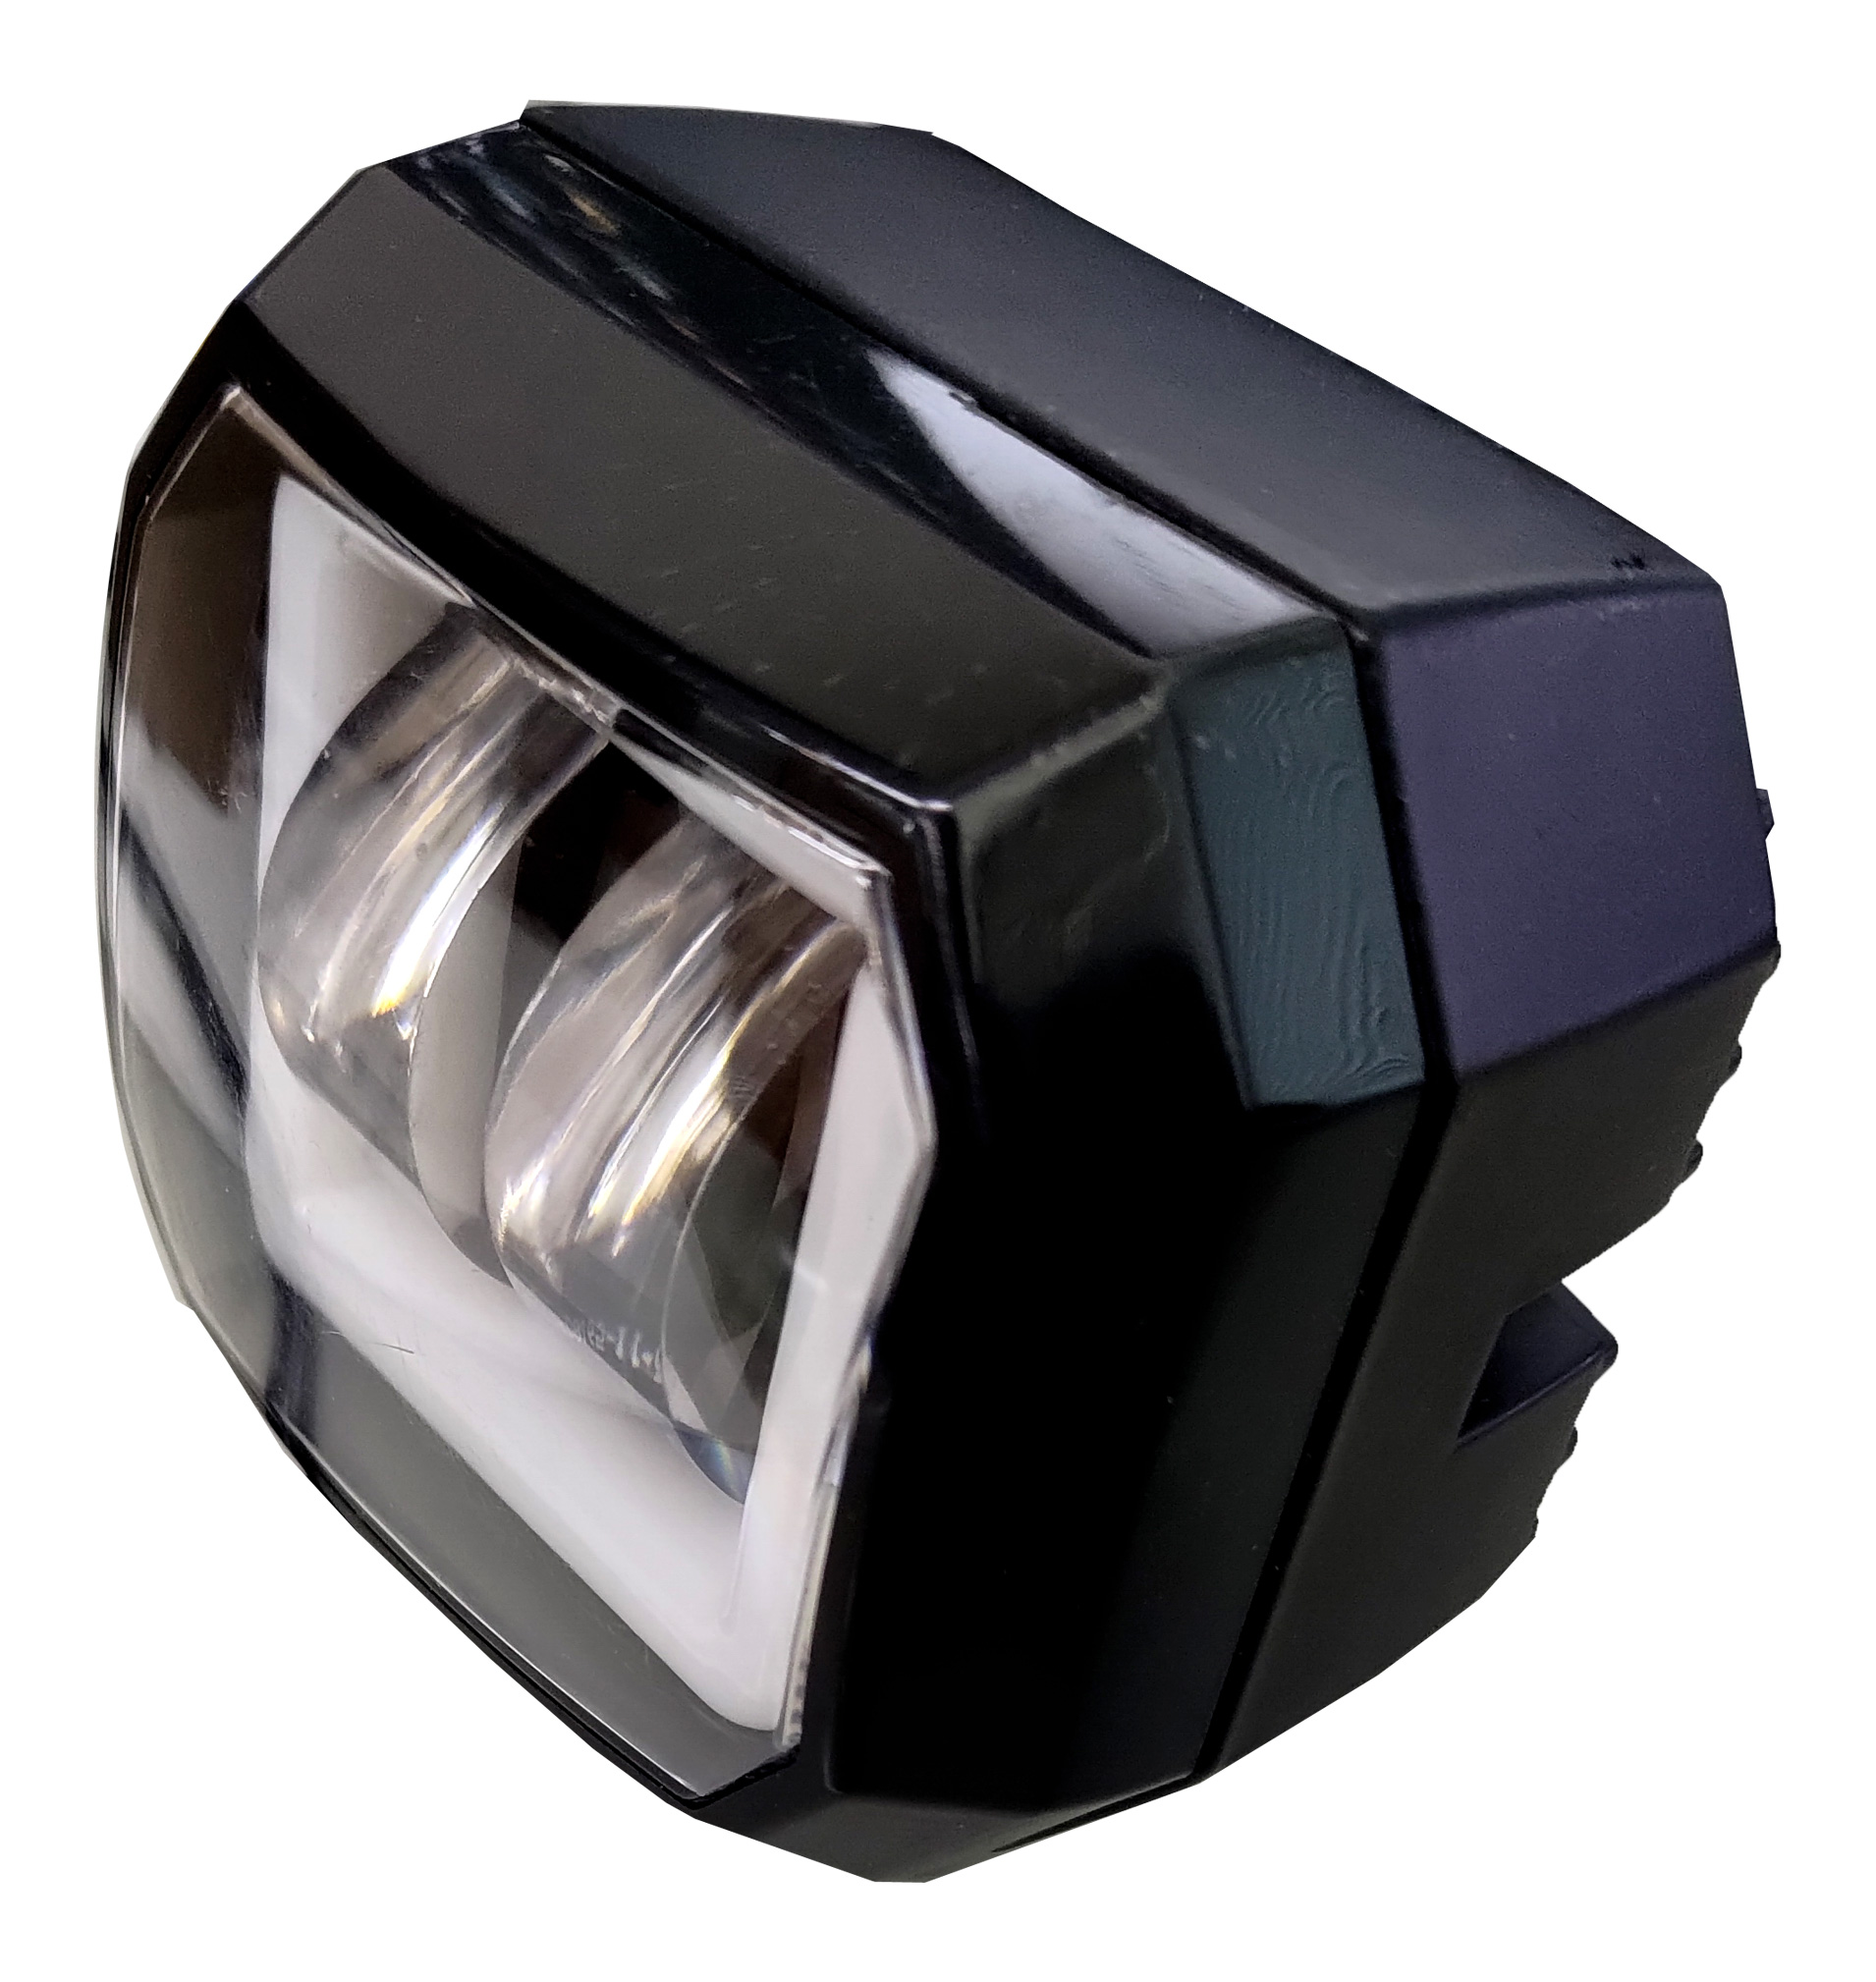 DC12V LED バイク用 イルミネーション付き フォグランプ 1灯セット（丸型 角型）6000K 白 ホワイト 補助灯 2輪